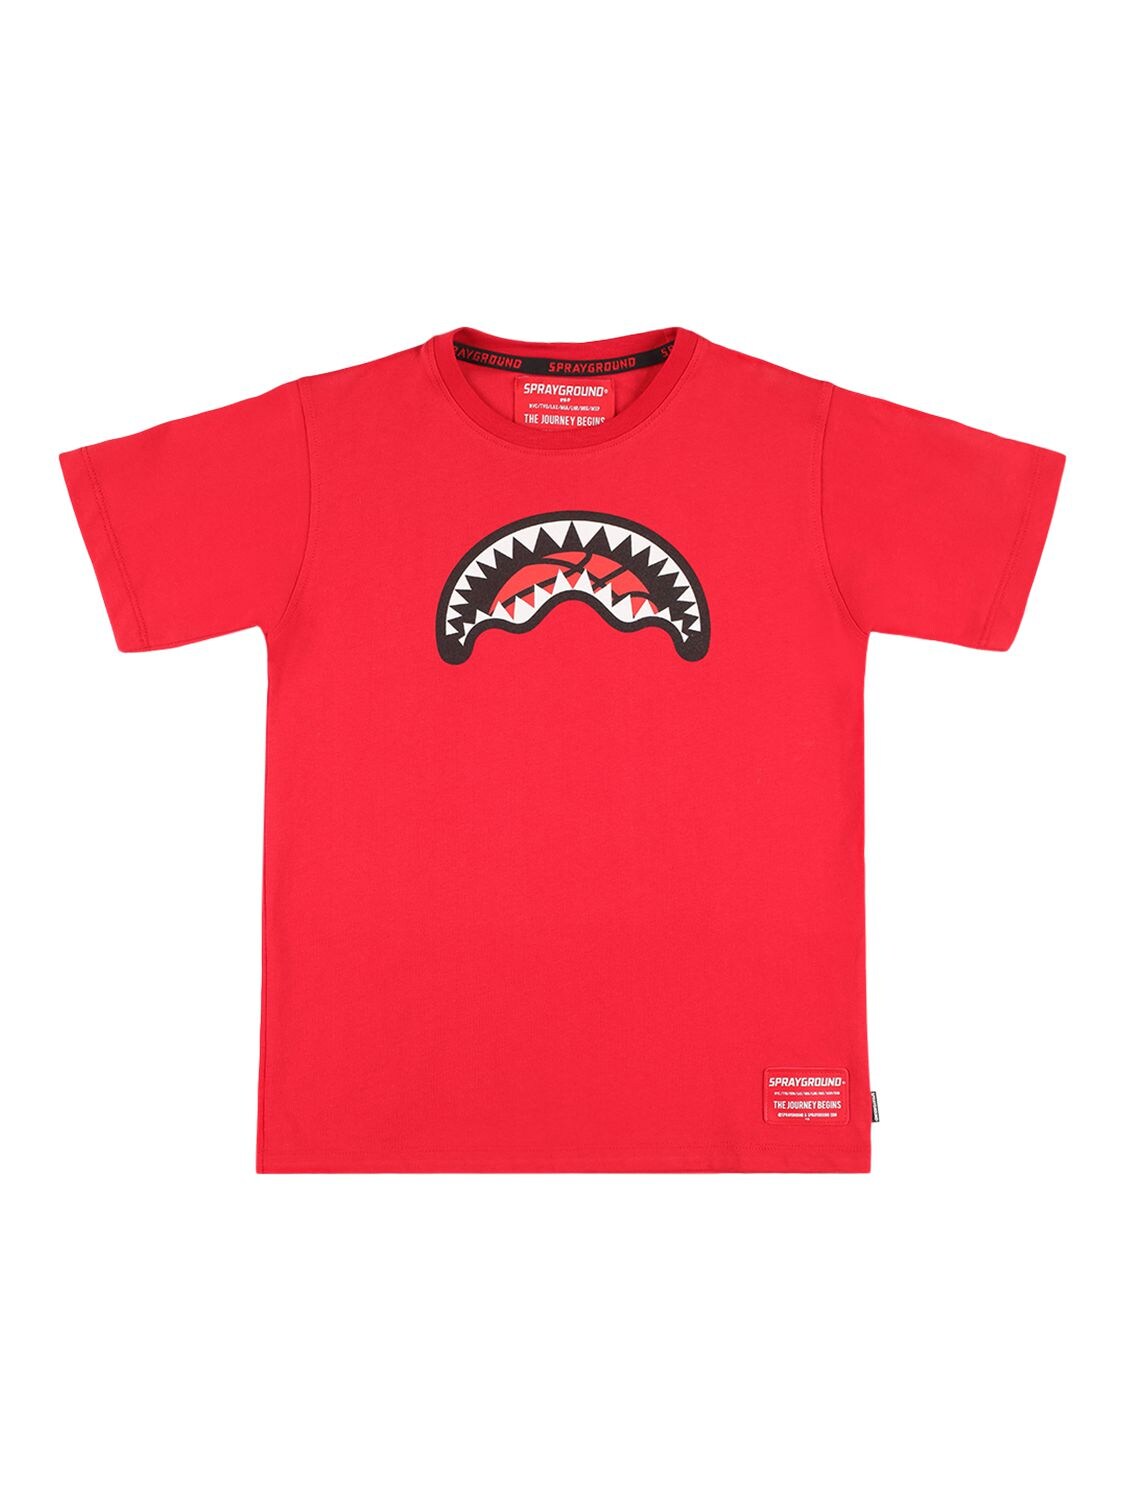 Sprayground Kids' Printed Cotton Jersey T-shirt In Red